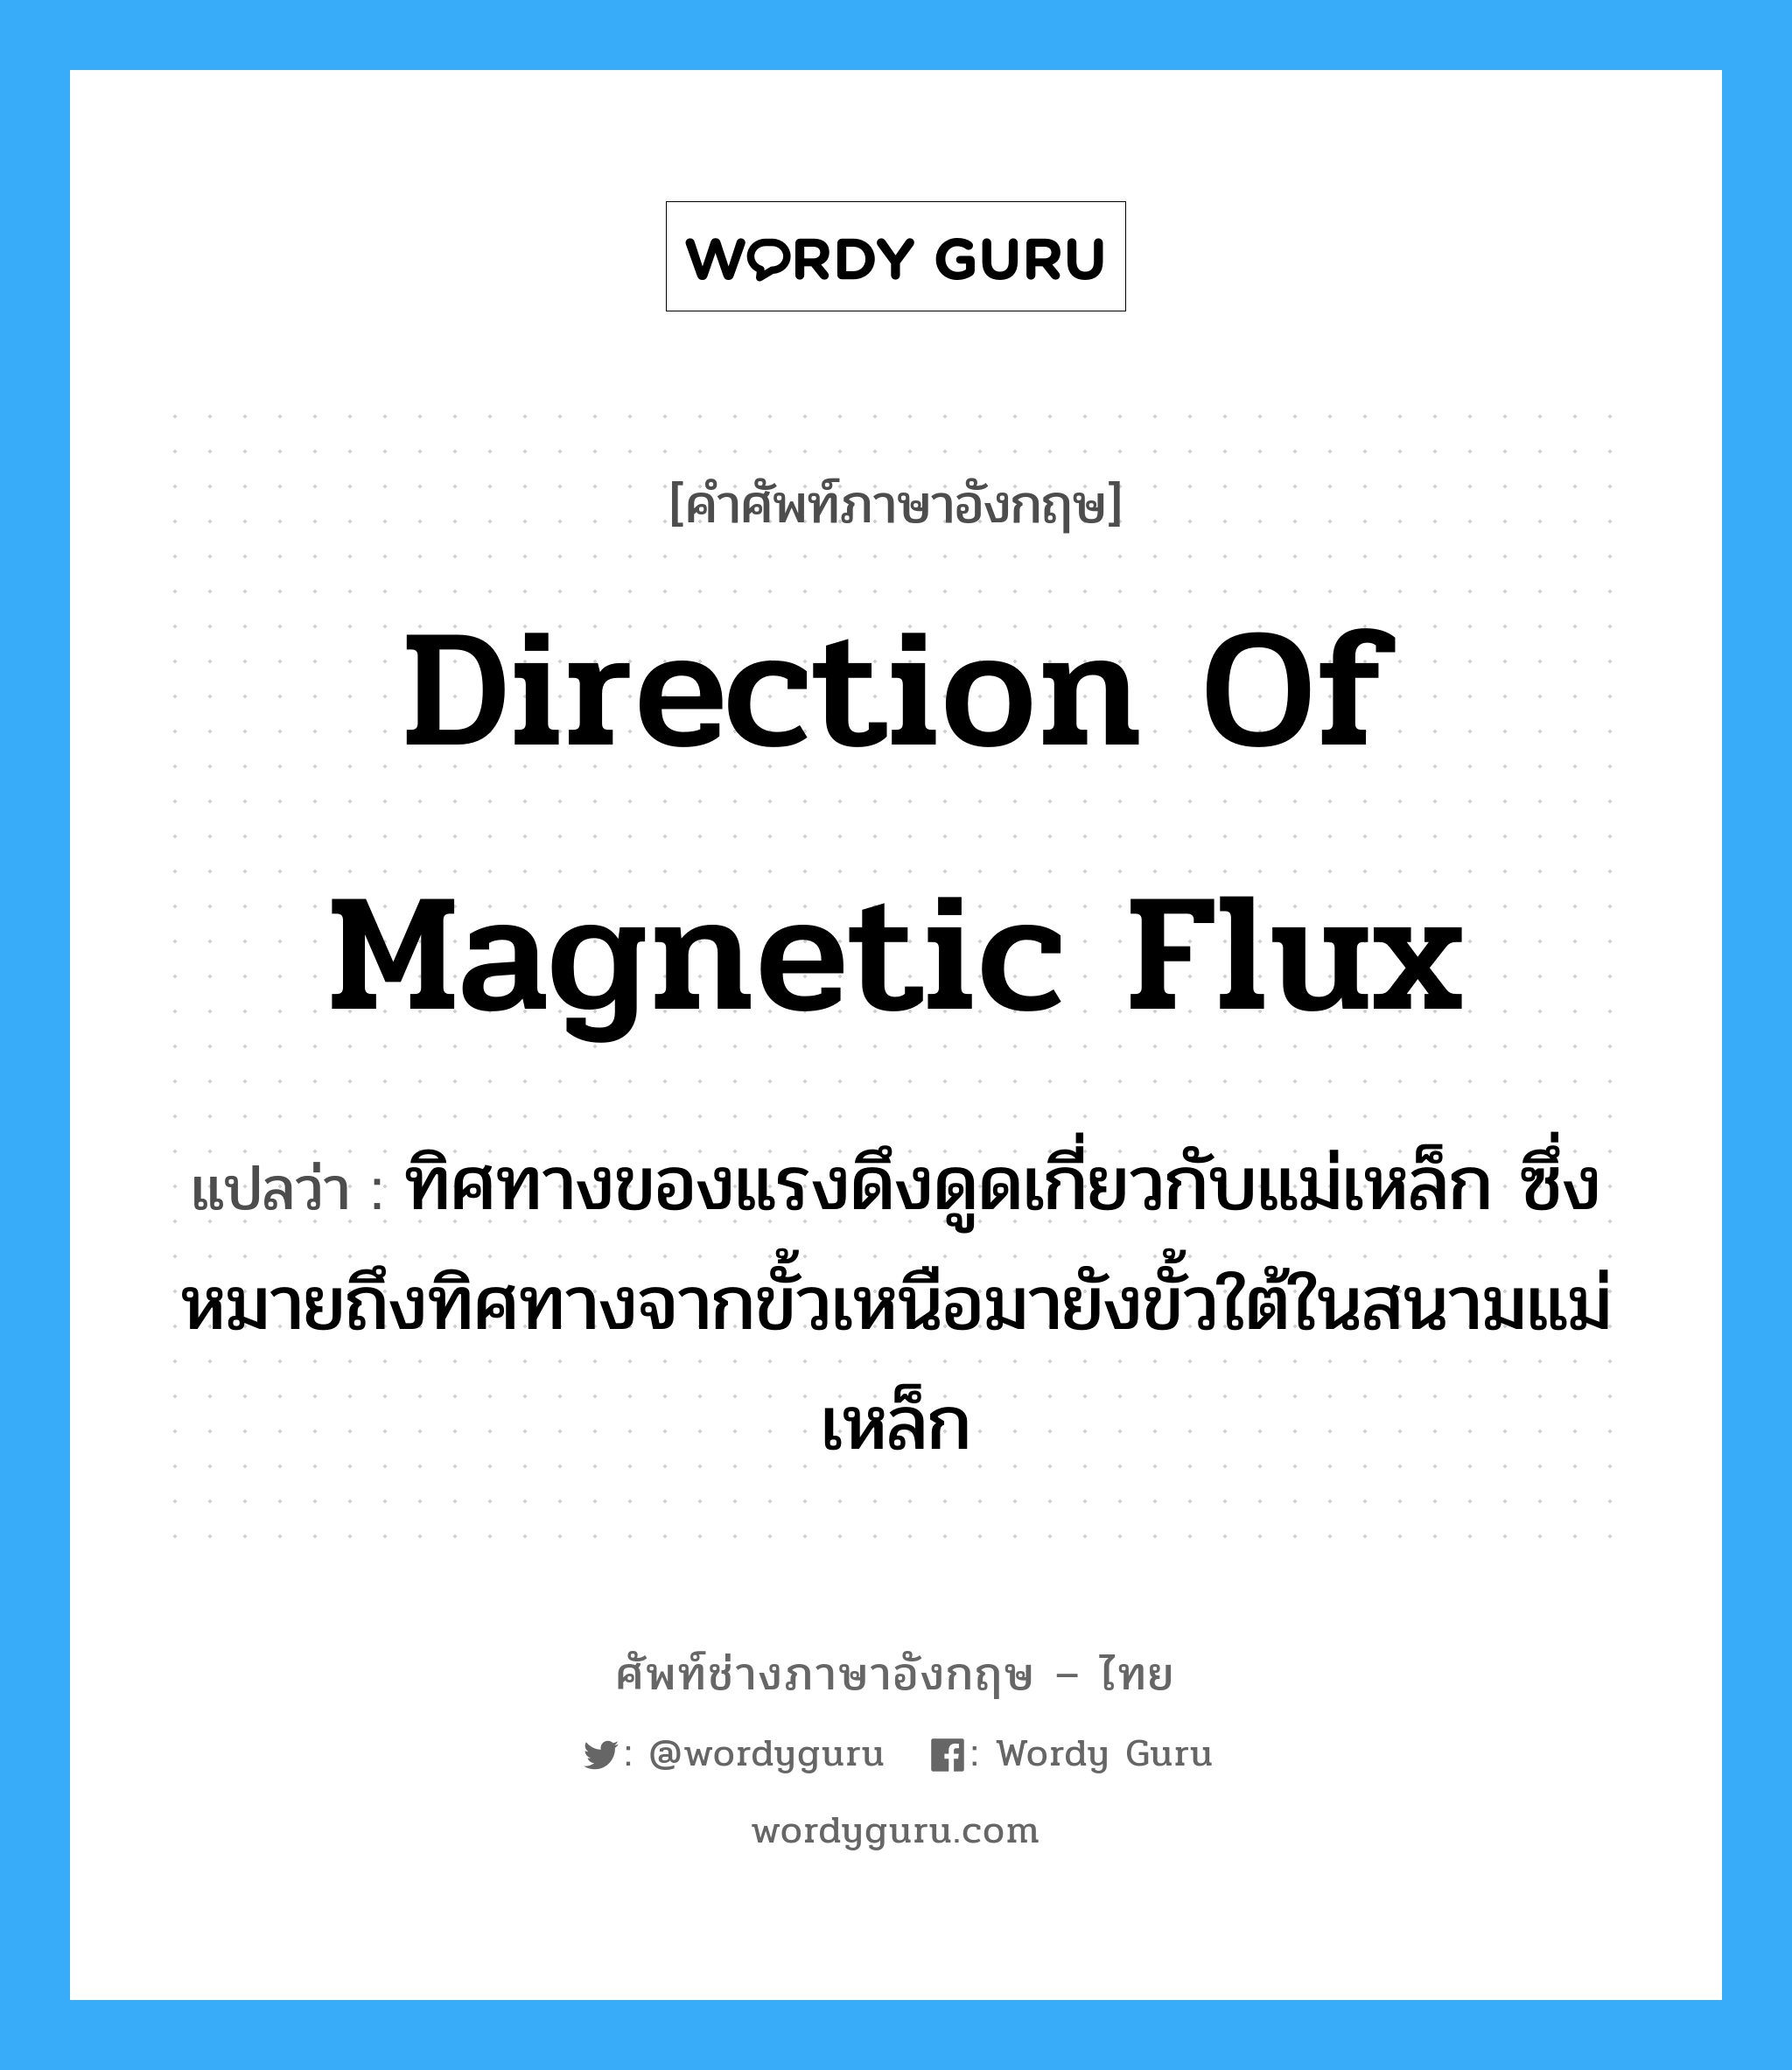 direction of magnetic flux แปลว่า?, คำศัพท์ช่างภาษาอังกฤษ - ไทย direction of magnetic flux คำศัพท์ภาษาอังกฤษ direction of magnetic flux แปลว่า ทิศทางของแรงดึงดูดเกี่ยวกับแม่เหล็ก ซึ่งหมายถึงทิศทางจากขั้วเหนือมายังขั้วใต้ในสนามแม่เหล็ก